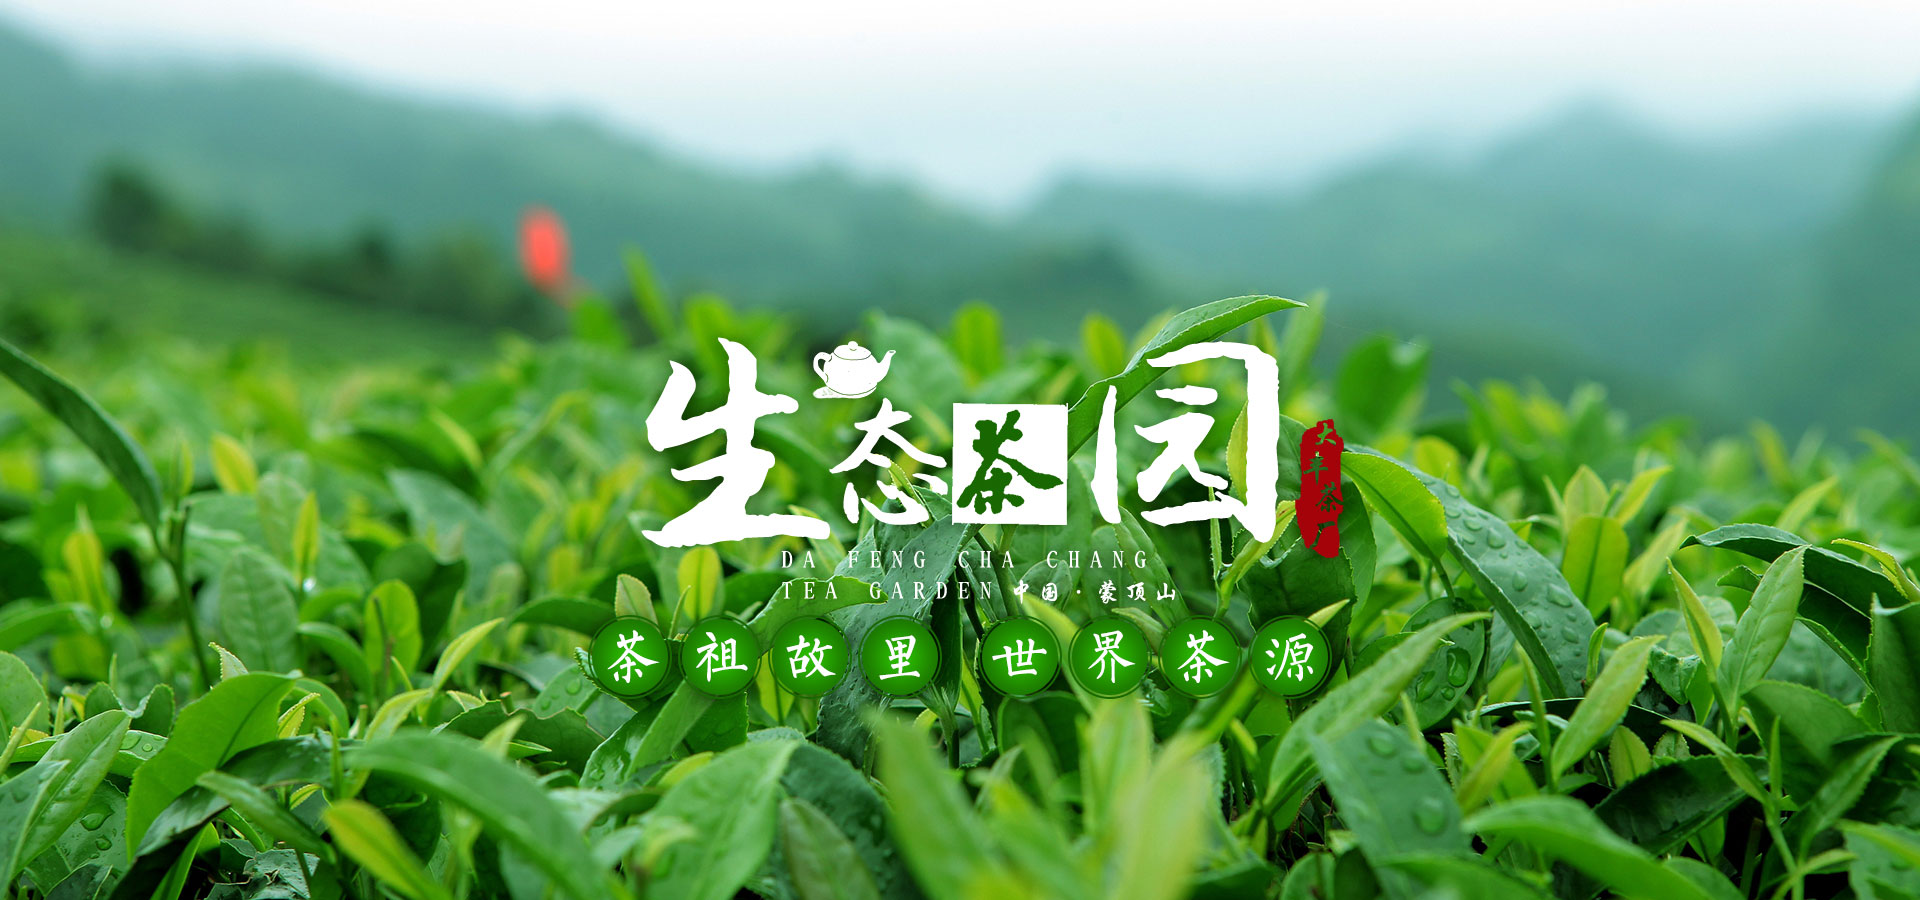 大丰茶厂生态茶园，茶祖故里世界茶源，中国蒙顶山茶